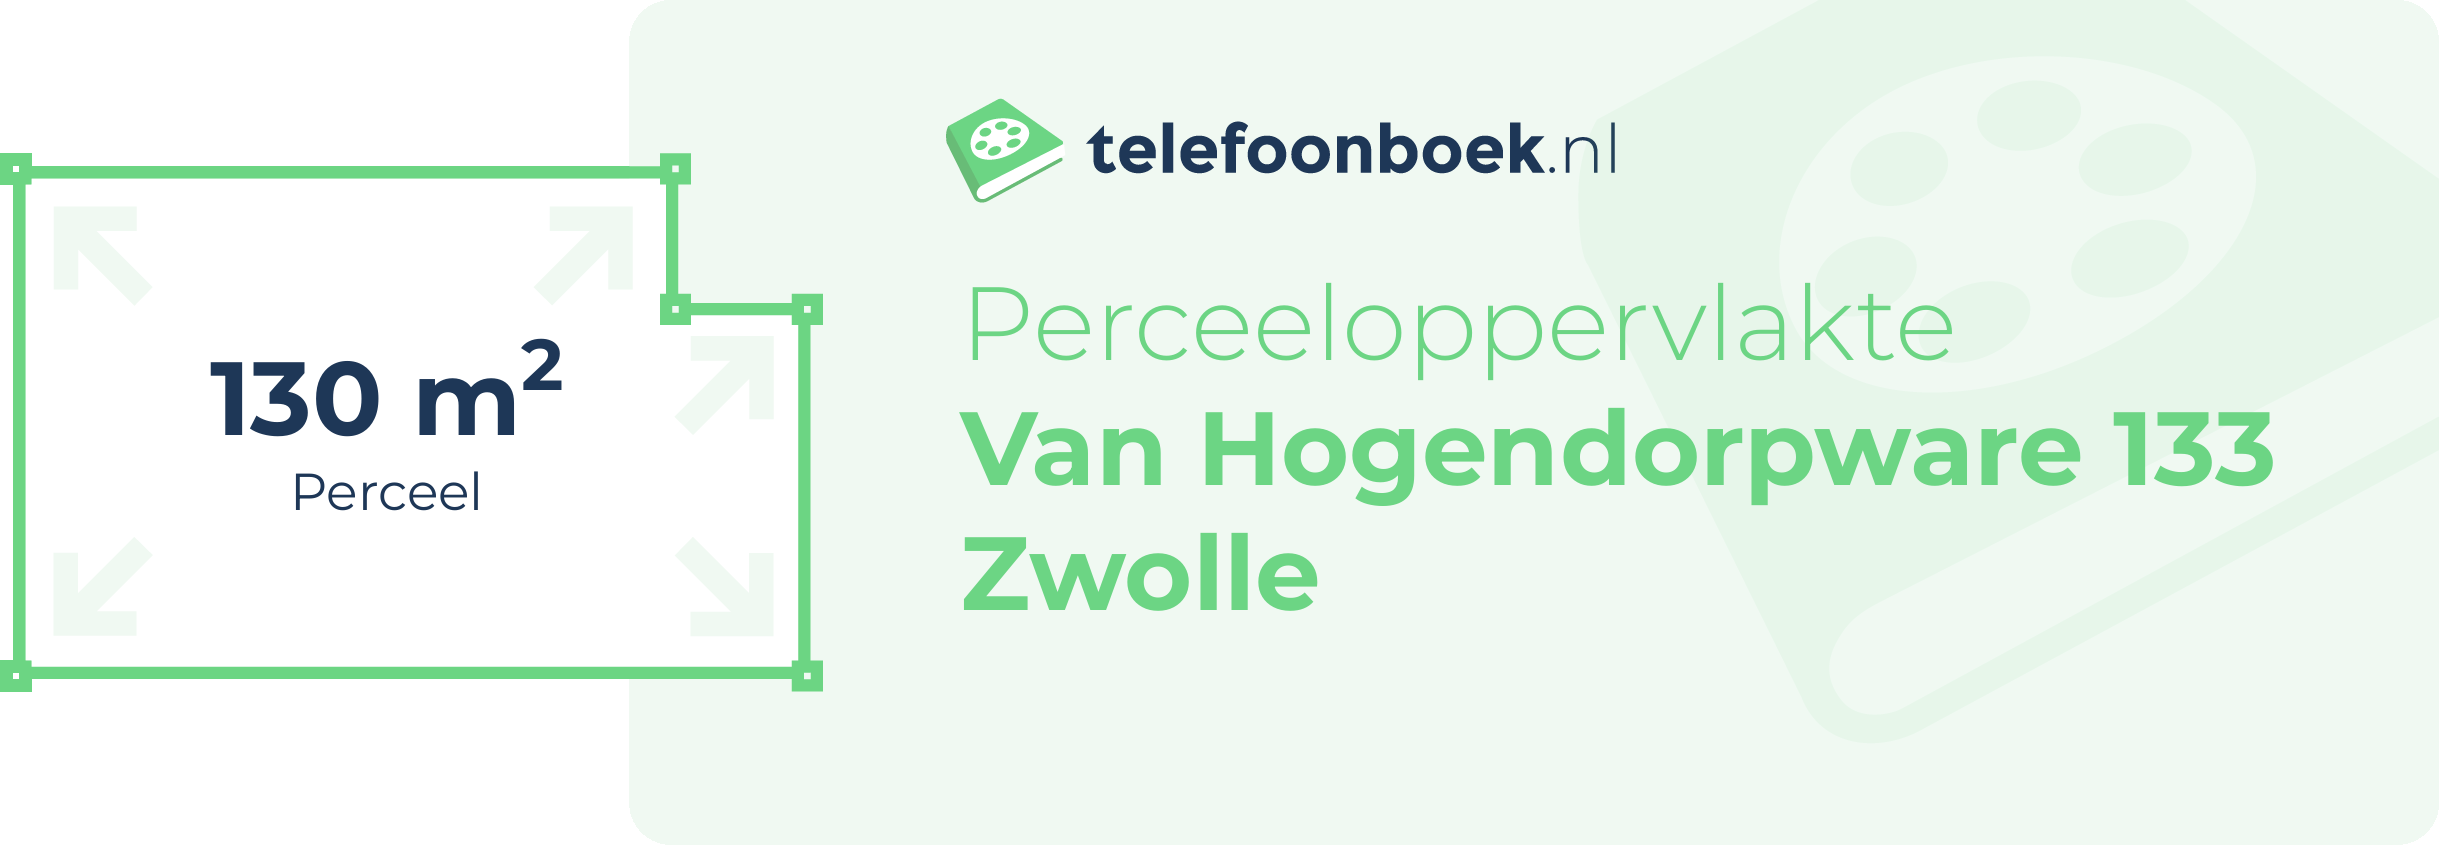 Perceeloppervlakte Van Hogendorpware 133 Zwolle